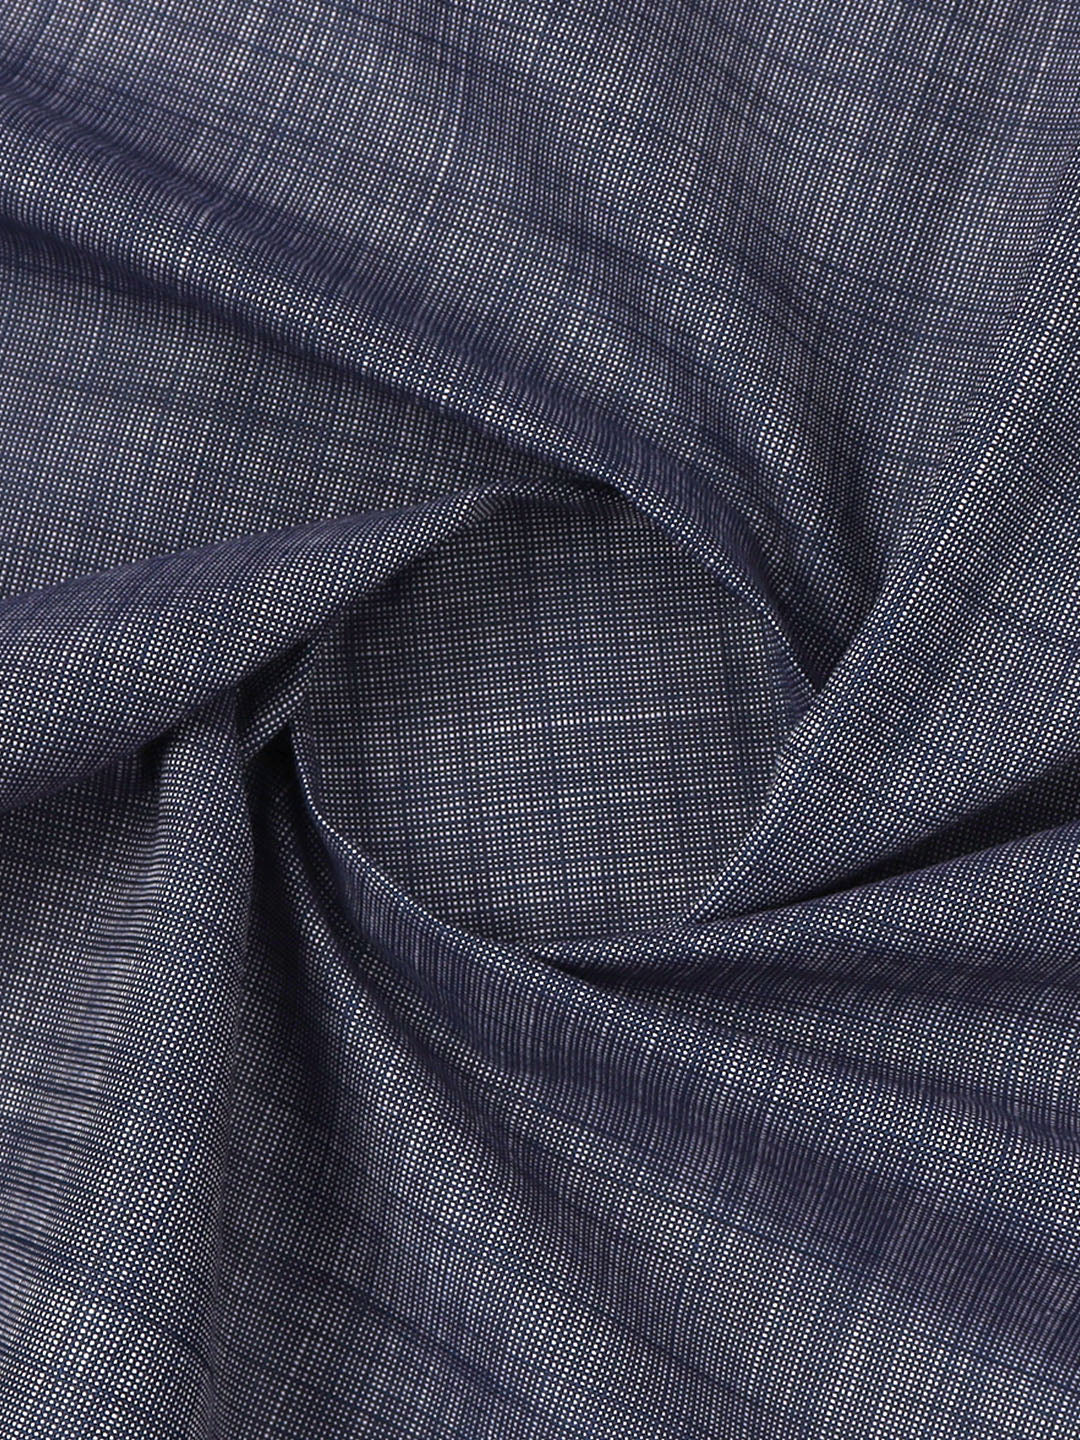 Cotton Premium Blue Colour Suiting Fabric-Golden Days